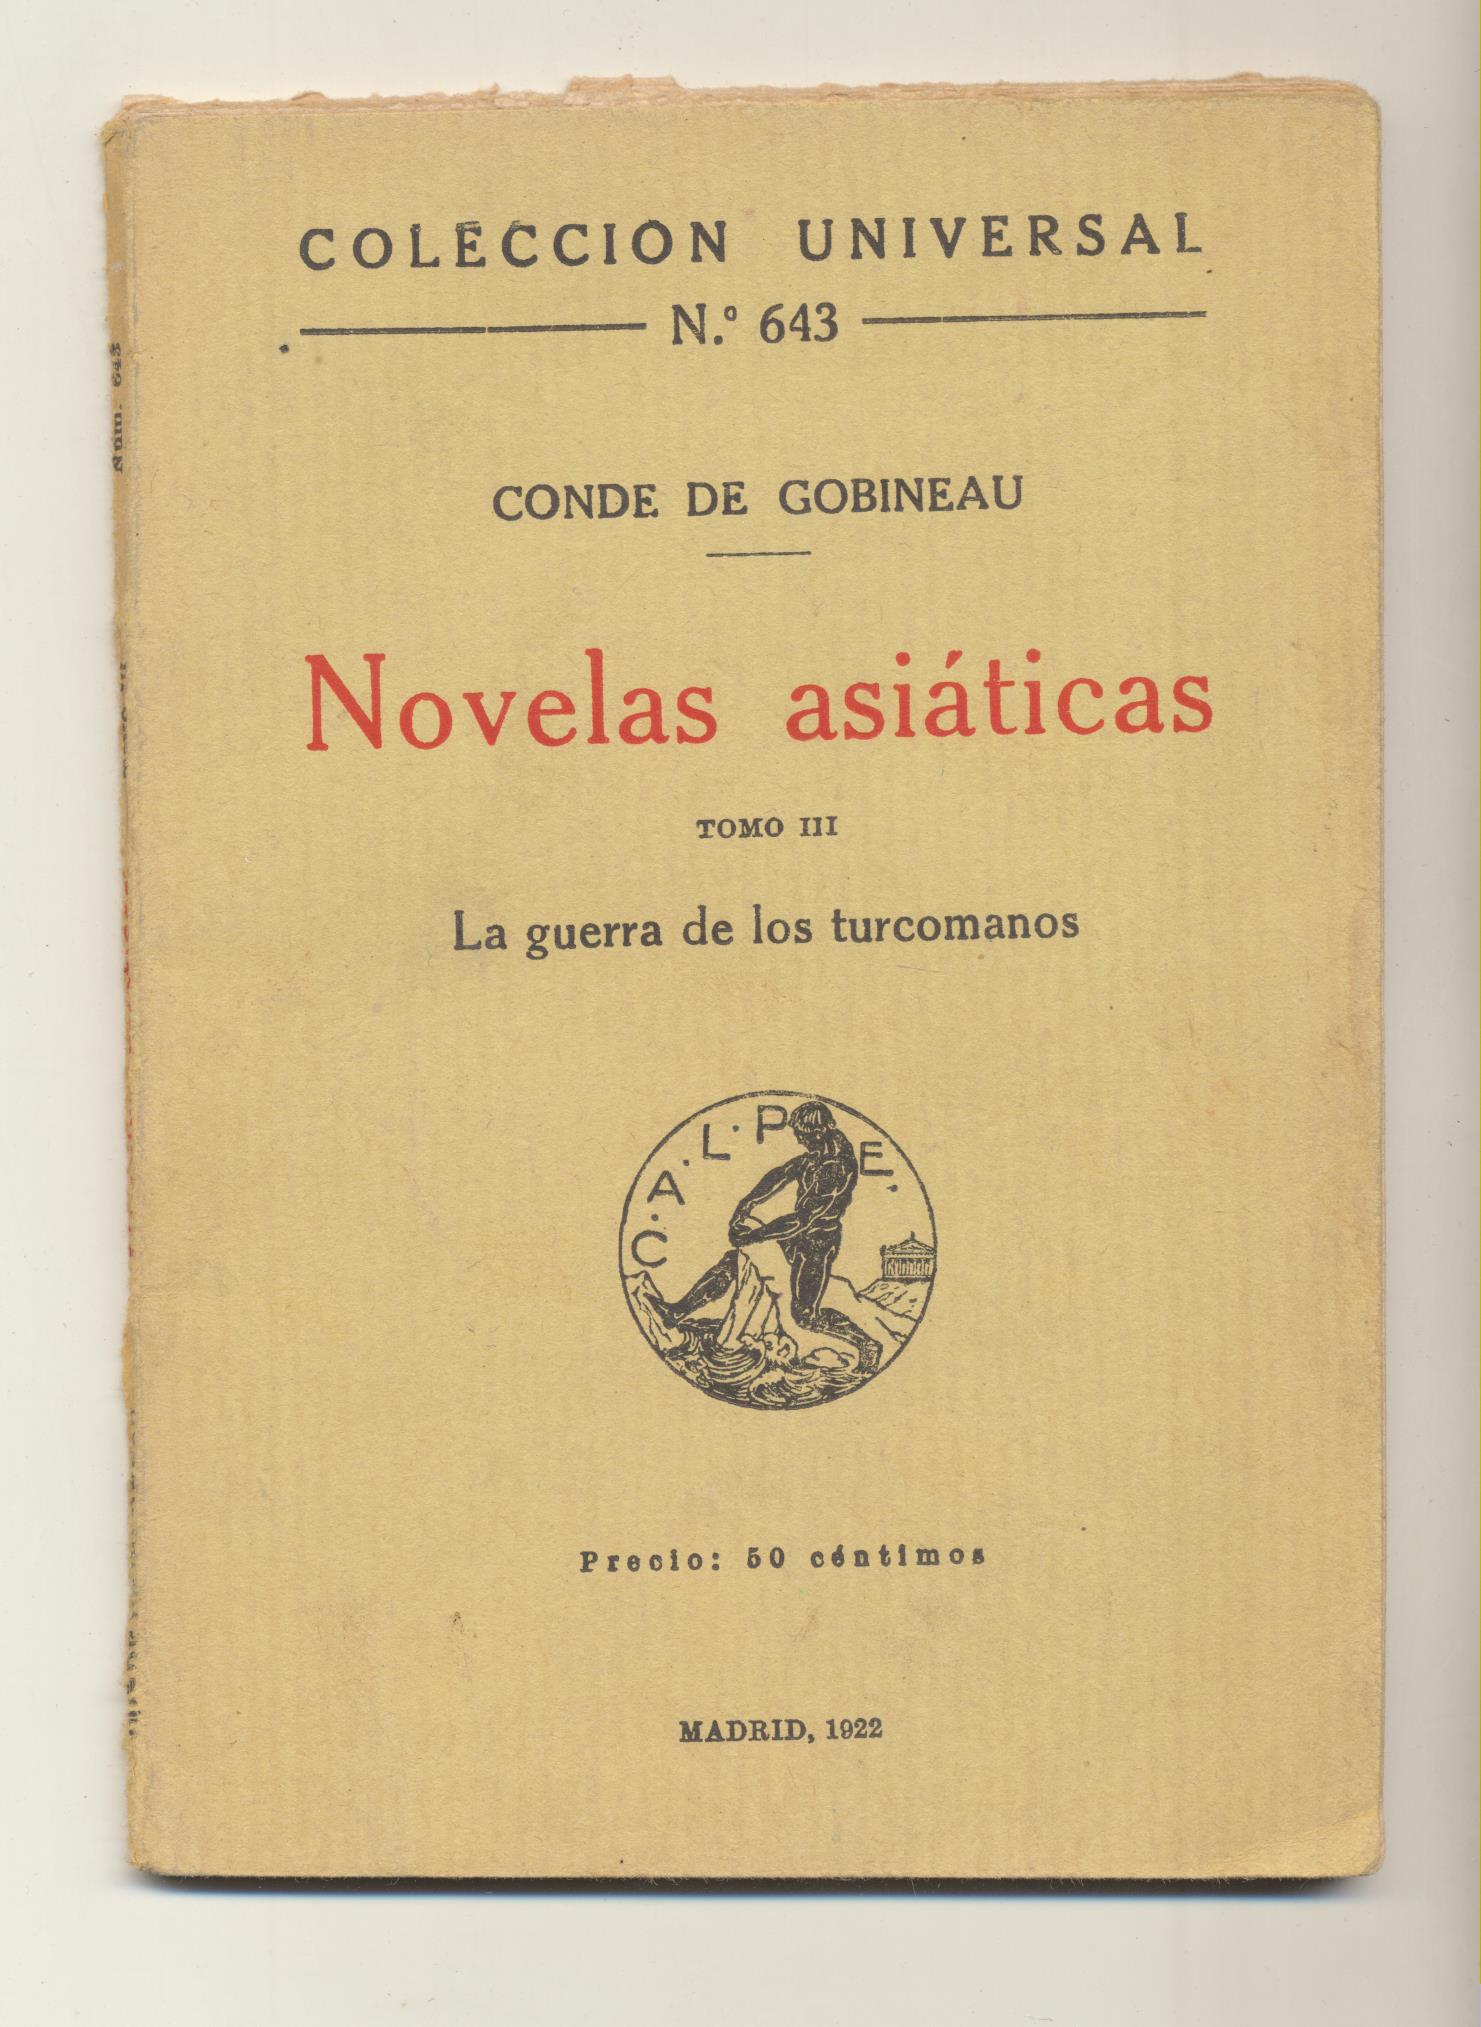 Conde de Cobineau. Novelas asiáticas Tomo II. La Guerra de los turcomanos. Calpe 1922